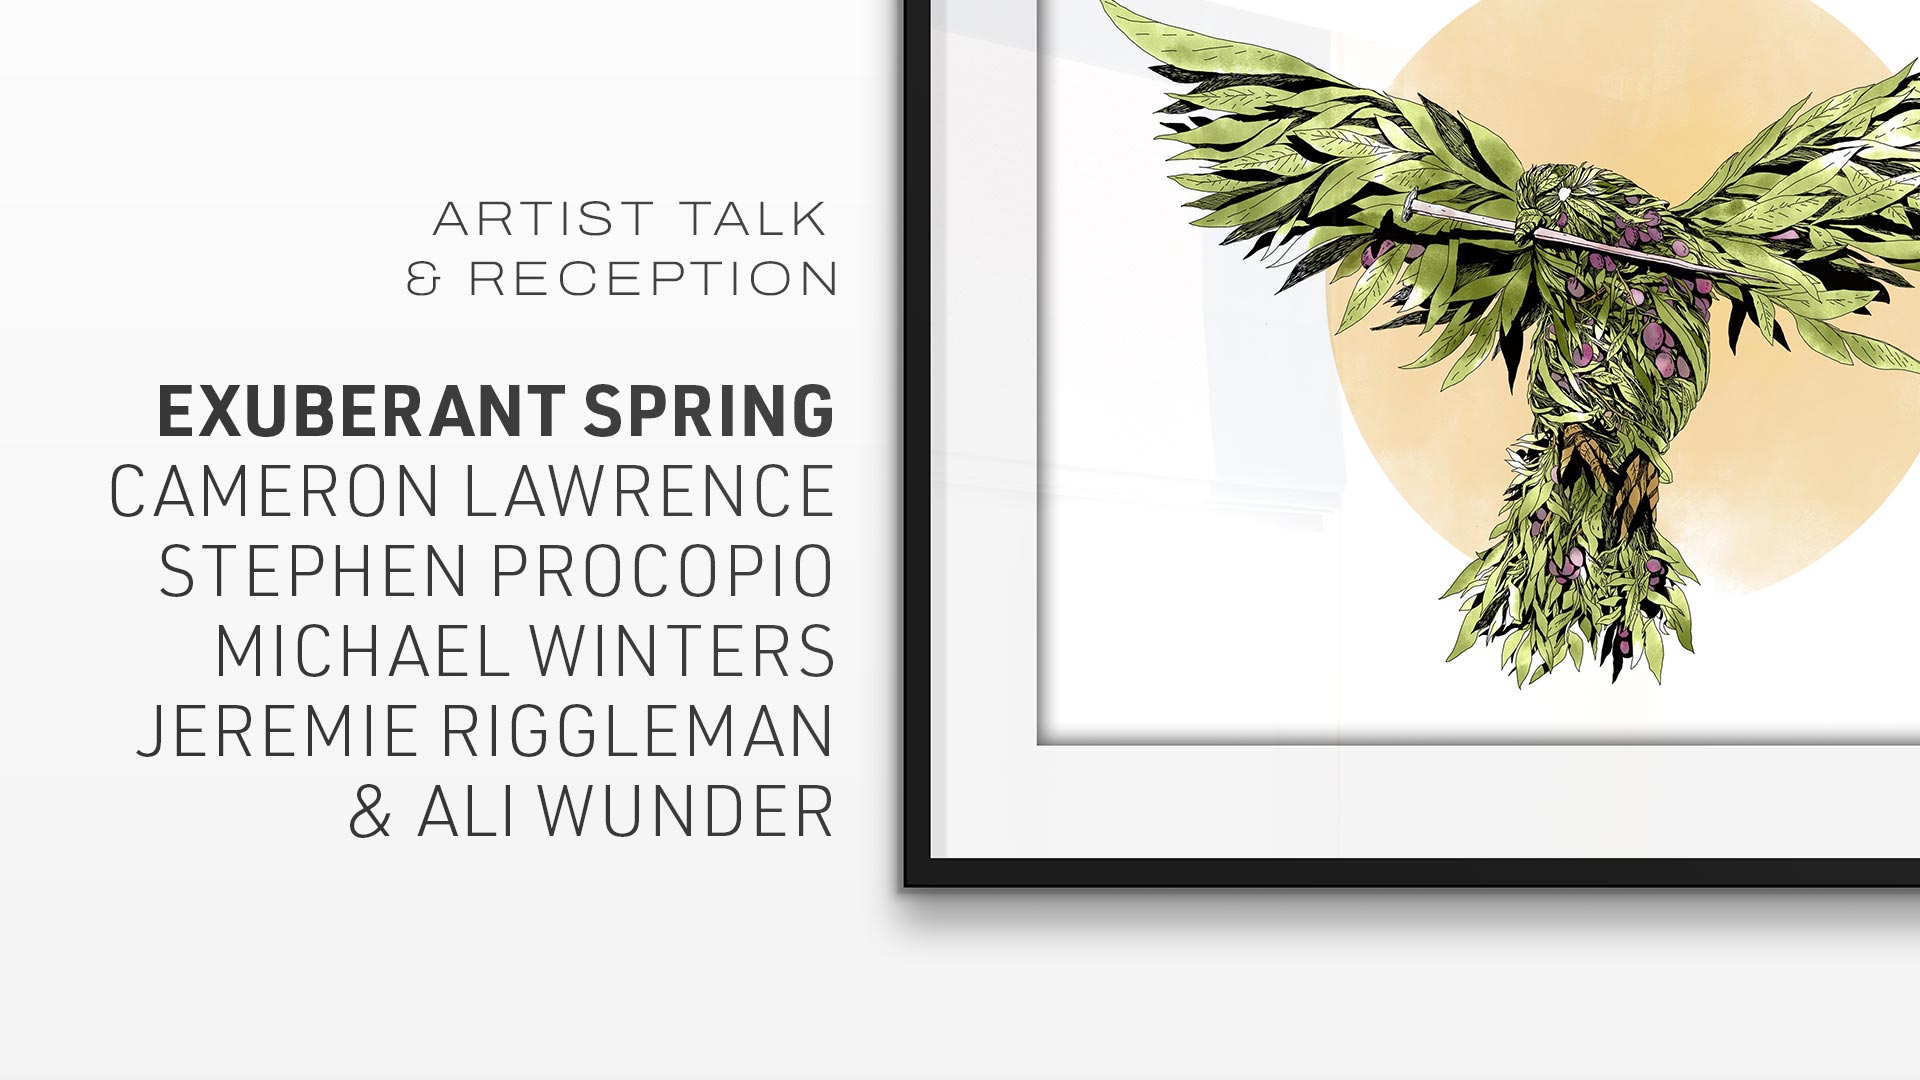 Artist Talk & Reception: Exuberant Spring